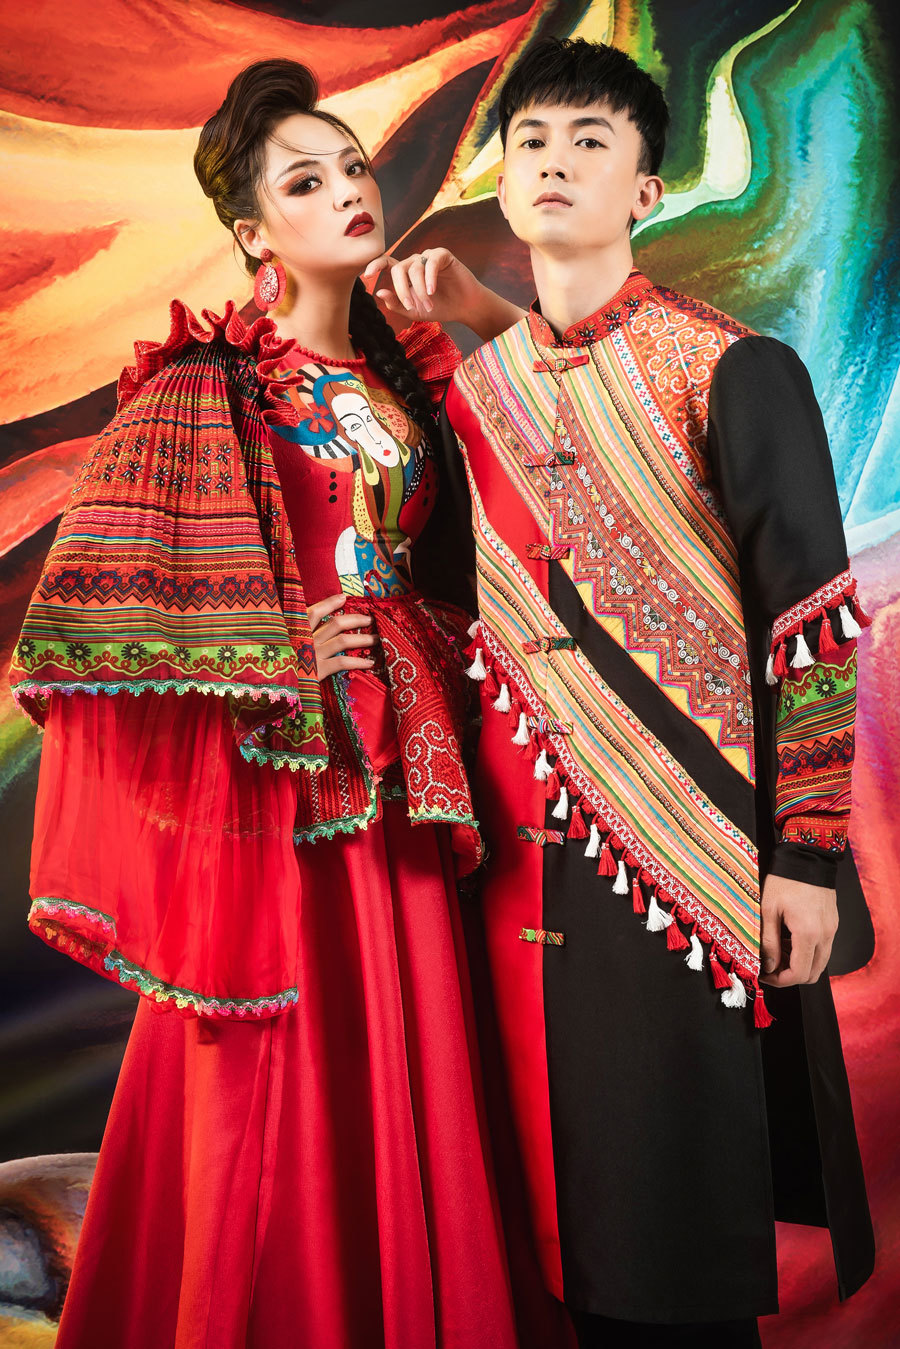 Nguyễn Nga mang trang phục dân tộc Nhã nhạc đến Miss Tourism International